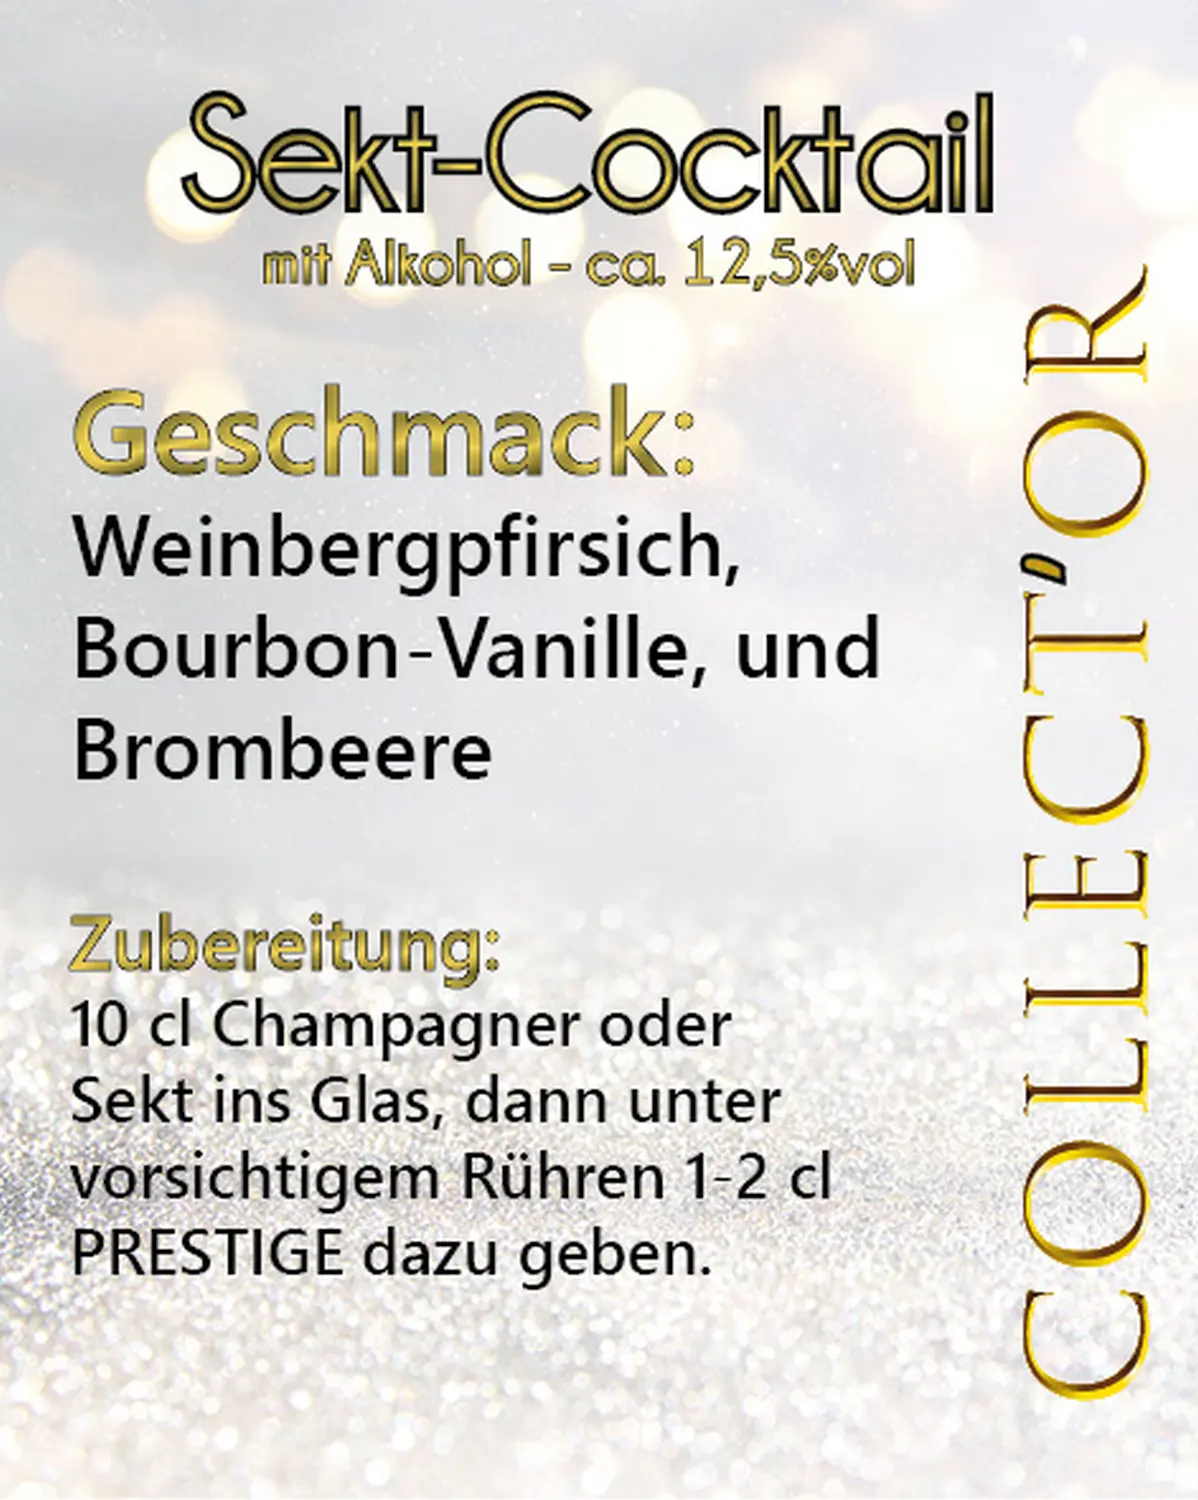 Collector Sektcocktails von COCKTALIS Deutschland hintem